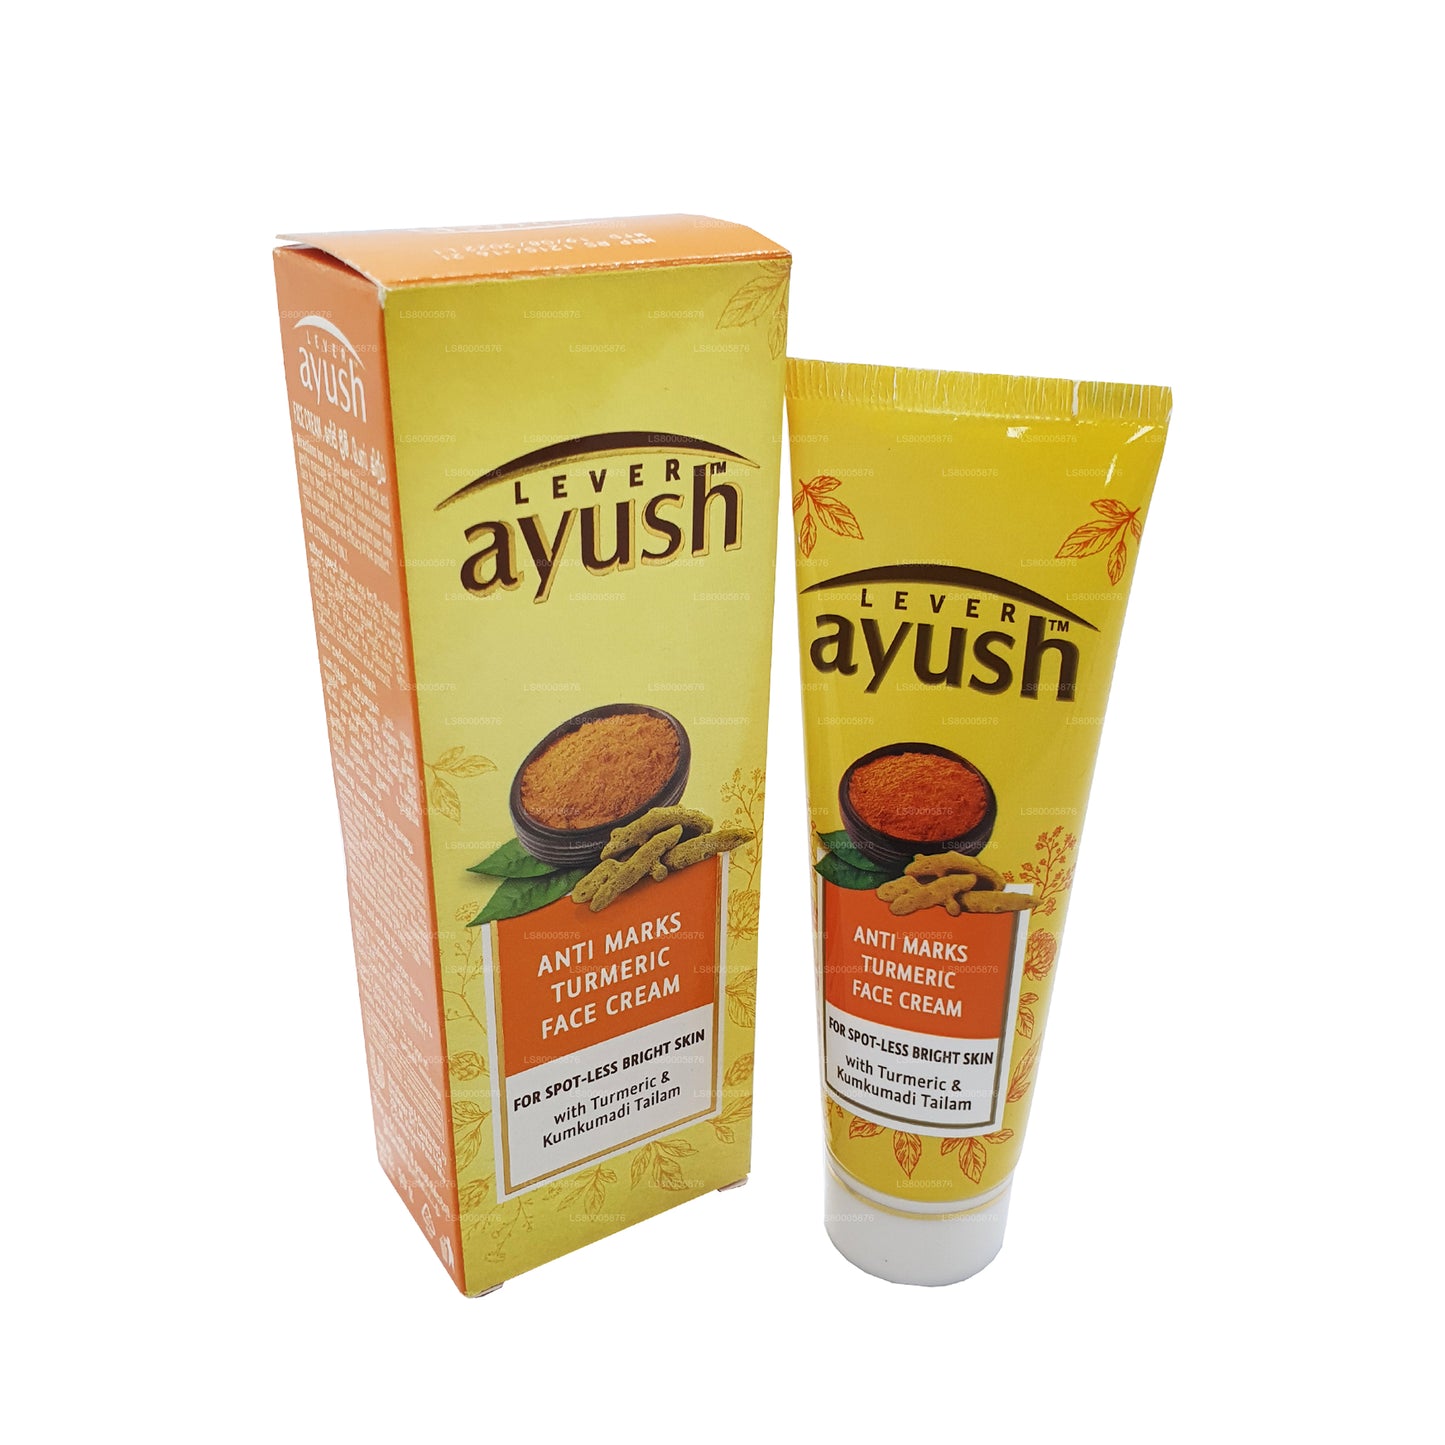 Crème pour le visage Ayush au curcuma (50g)